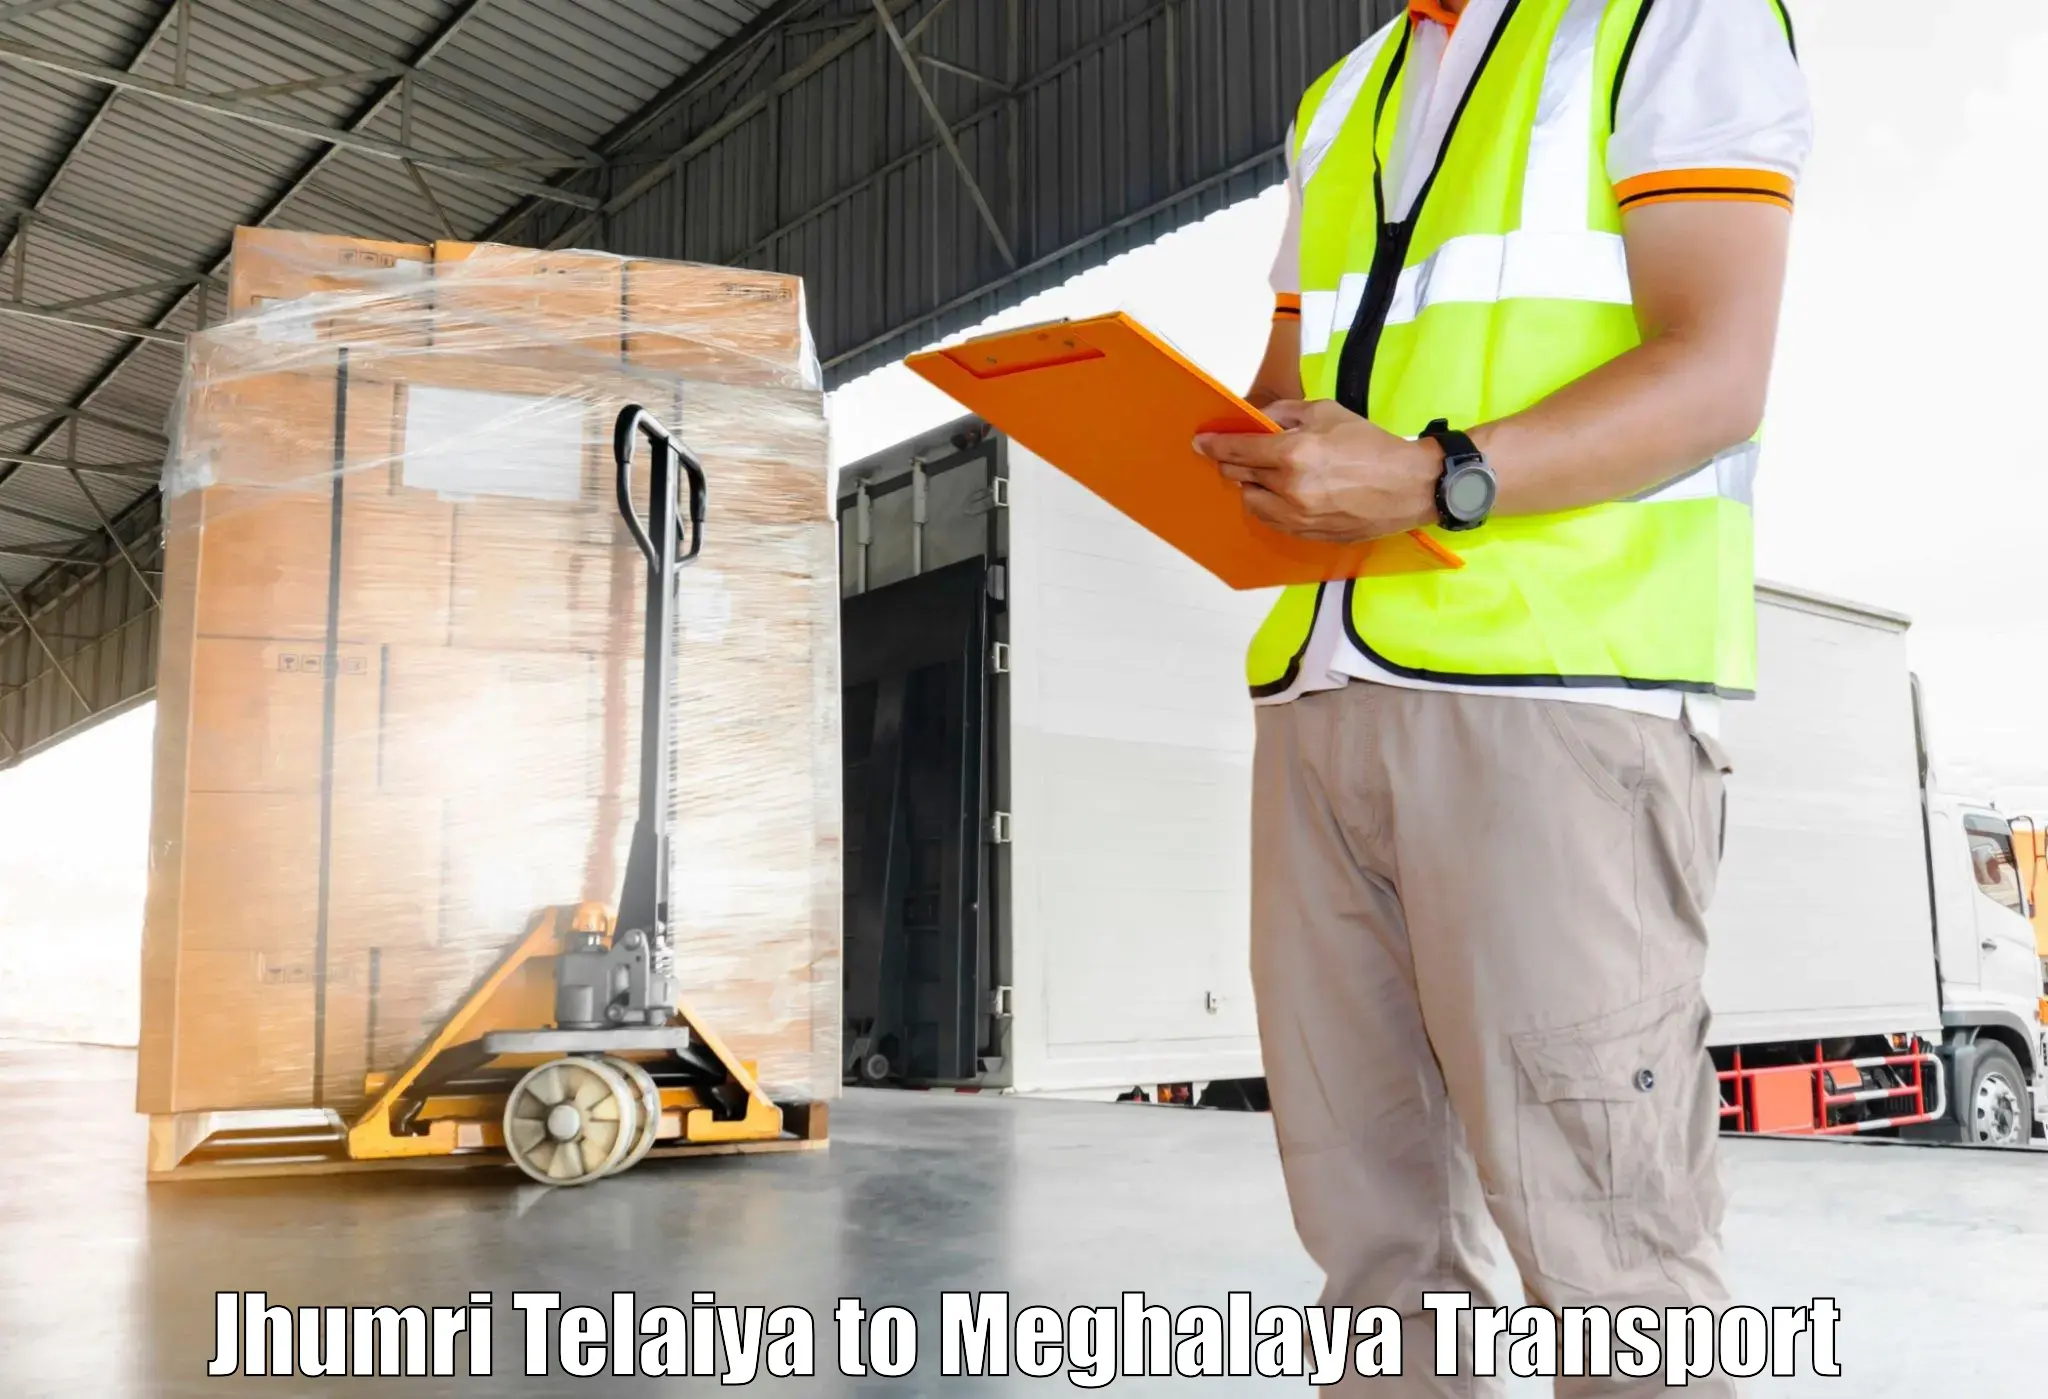 Shipping partner Jhumri Telaiya to Tura